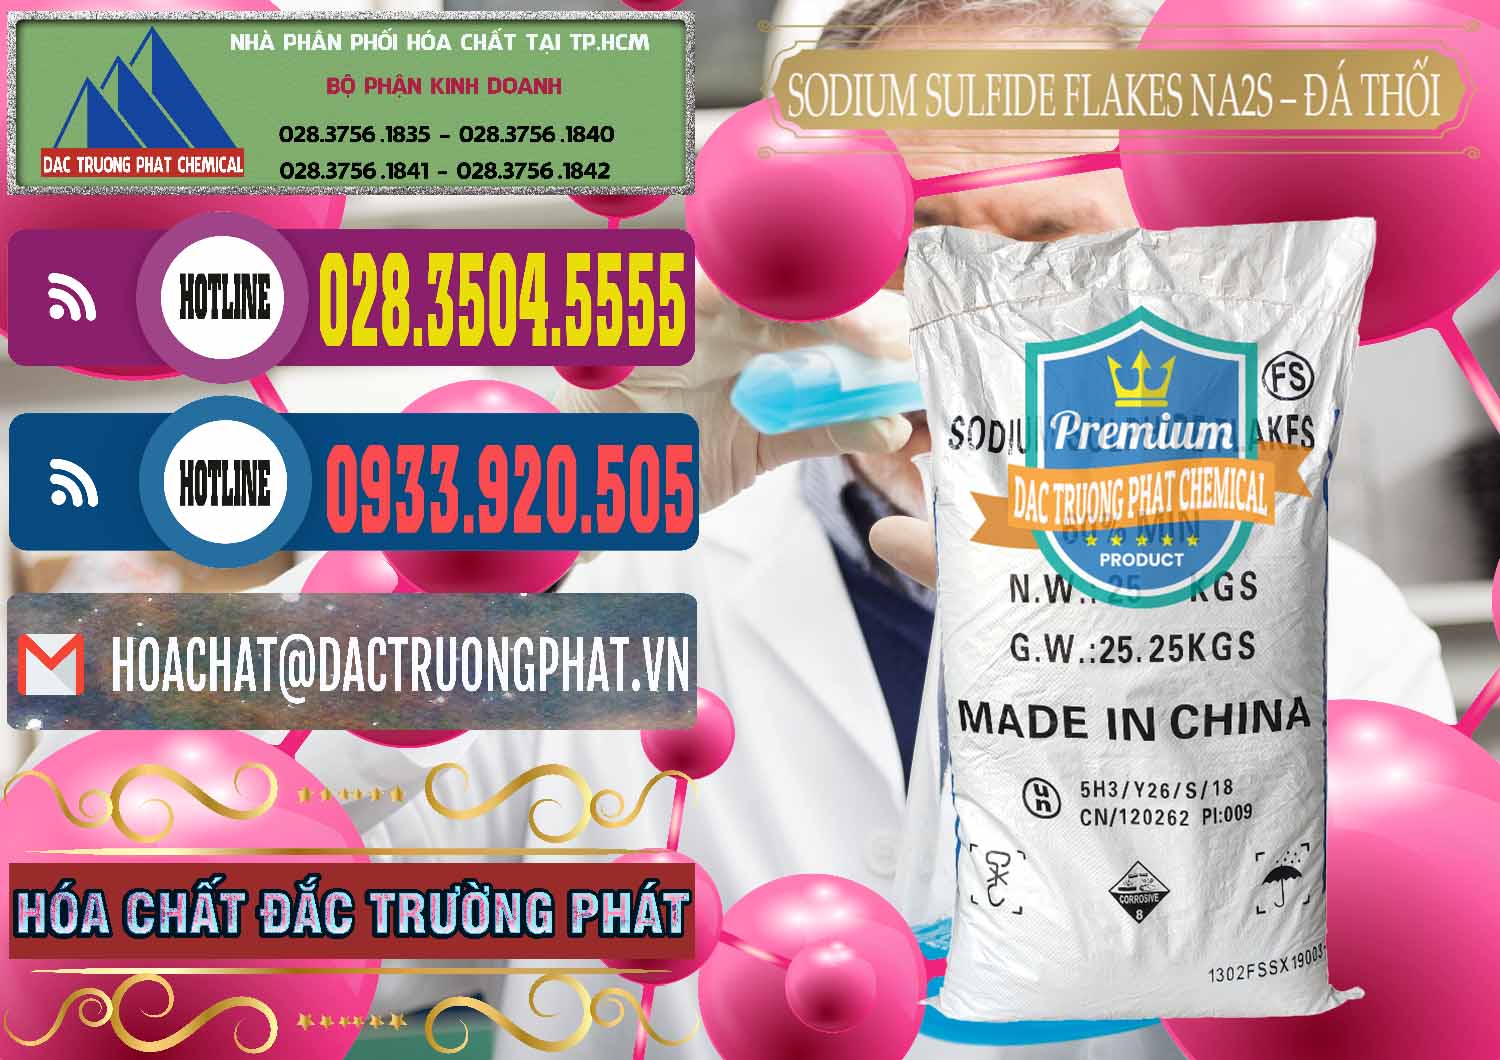 Công ty bán và phân phối Sodium Sulfide Flakes NA2S – Đá Thối Đỏ Trung Quốc China - 0150 - Đơn vị chuyên kinh doanh _ phân phối hóa chất tại TP.HCM - muabanhoachat.com.vn